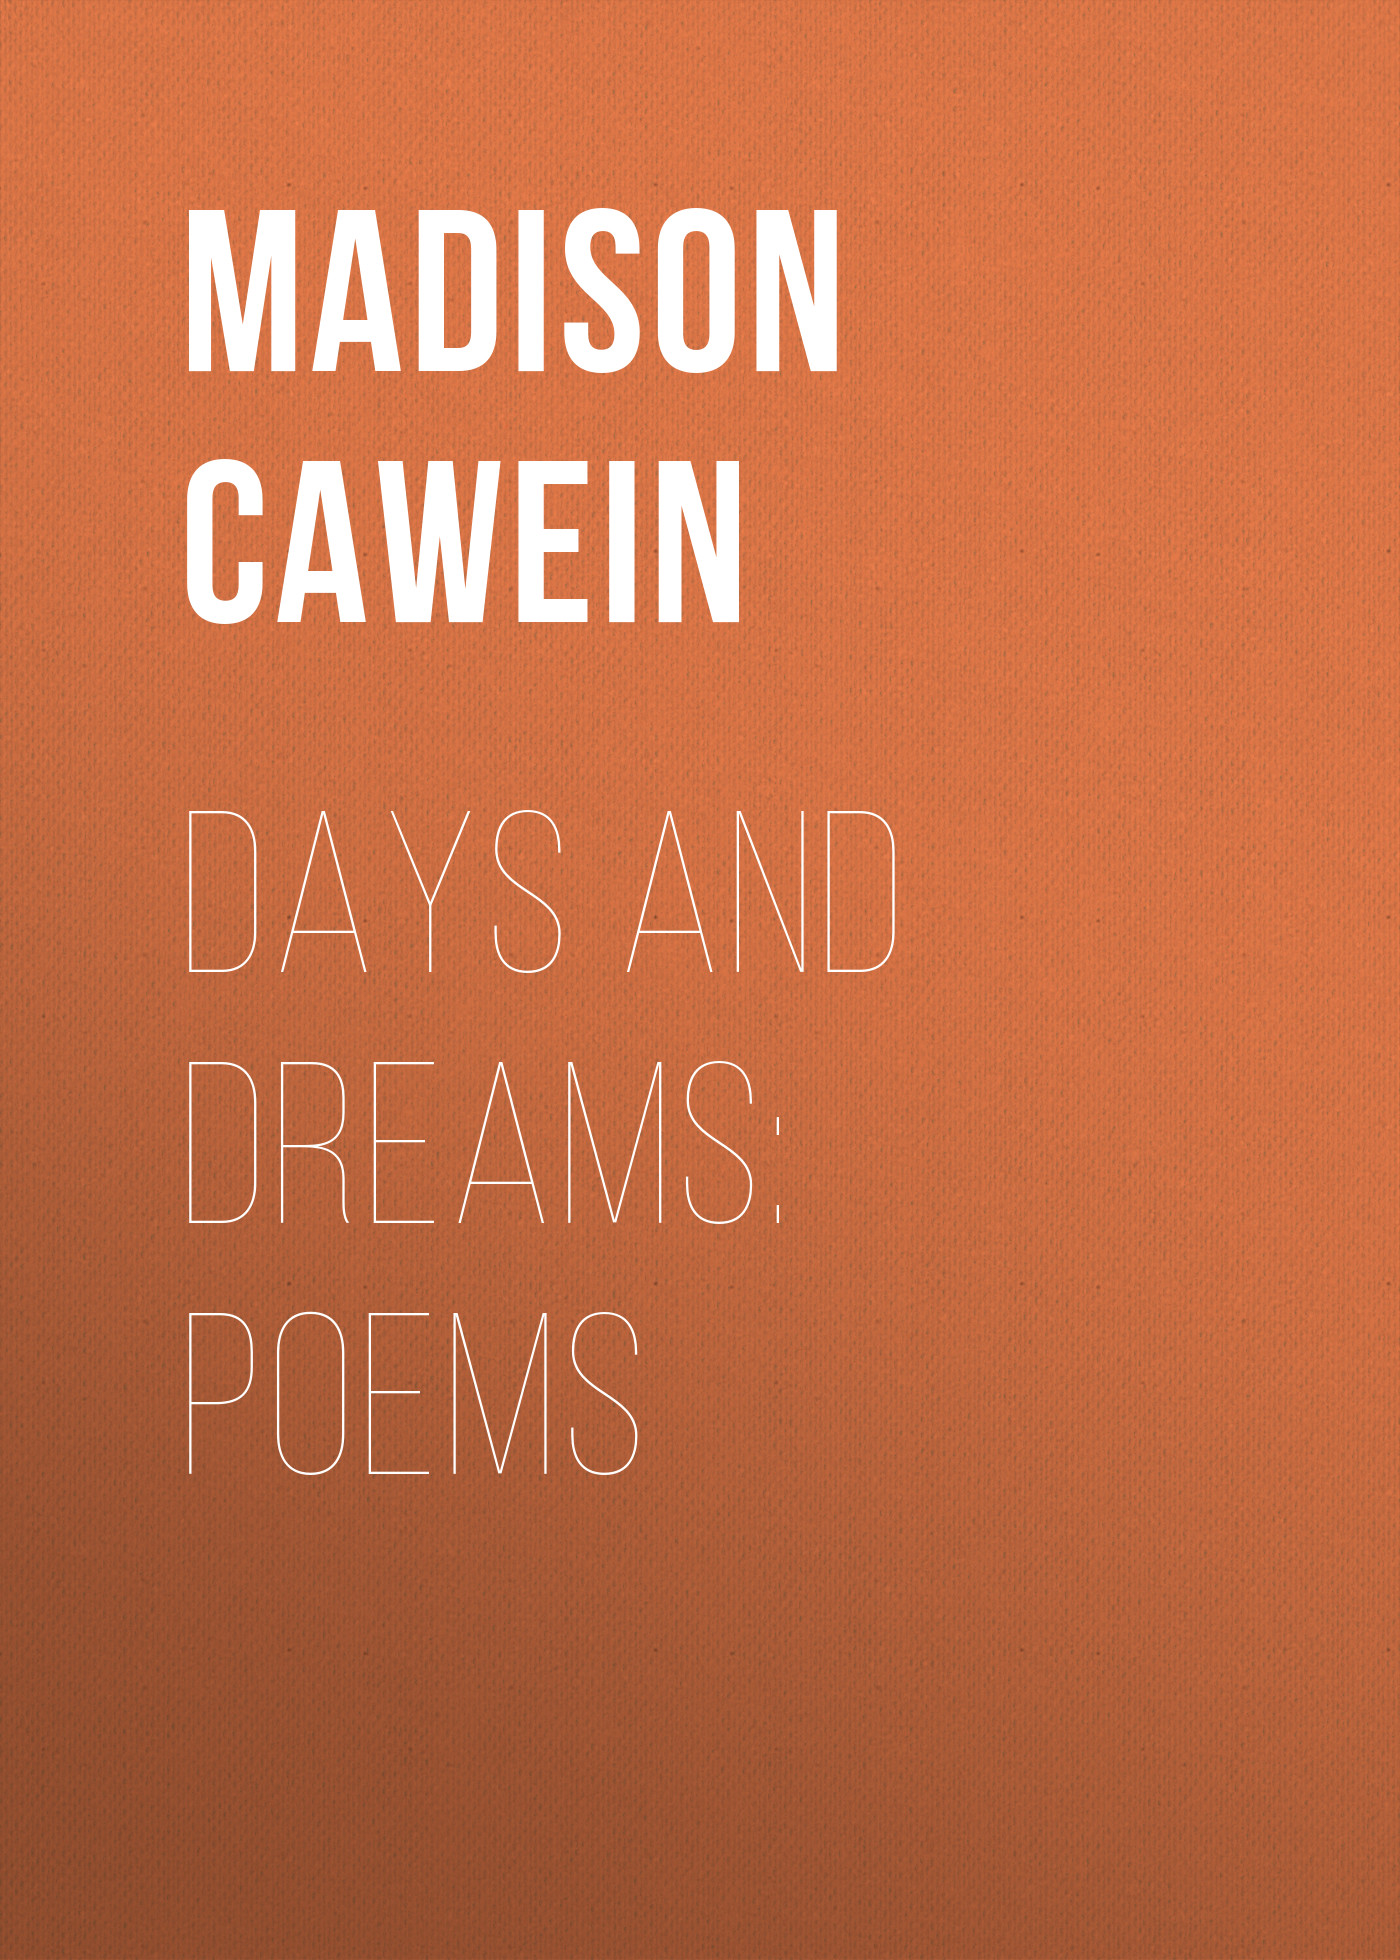 Книга Days and Dreams: Poems из серии , созданная Madison Cawein, может относится к жанру Поэзия, Зарубежная классика, Зарубежные стихи. Стоимость электронной книги Days and Dreams: Poems с идентификатором 23154891 составляет 5.99 руб.